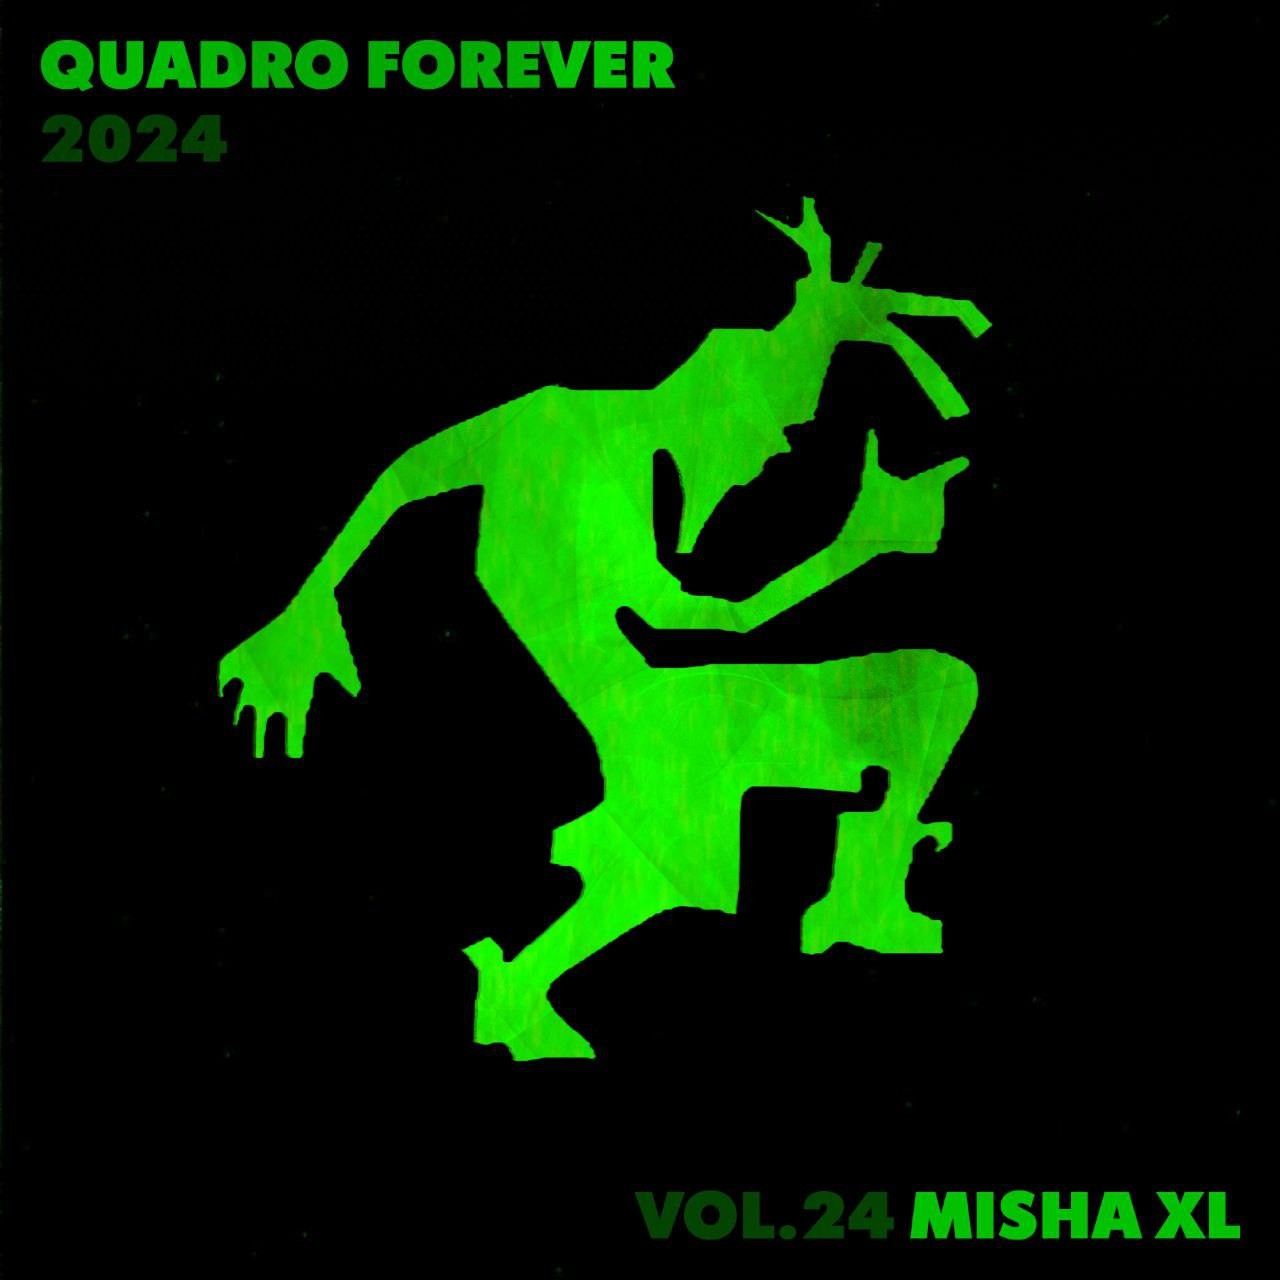 MISHA XL - QUADRO FOREVER vol.24 - LIVE MIX #24